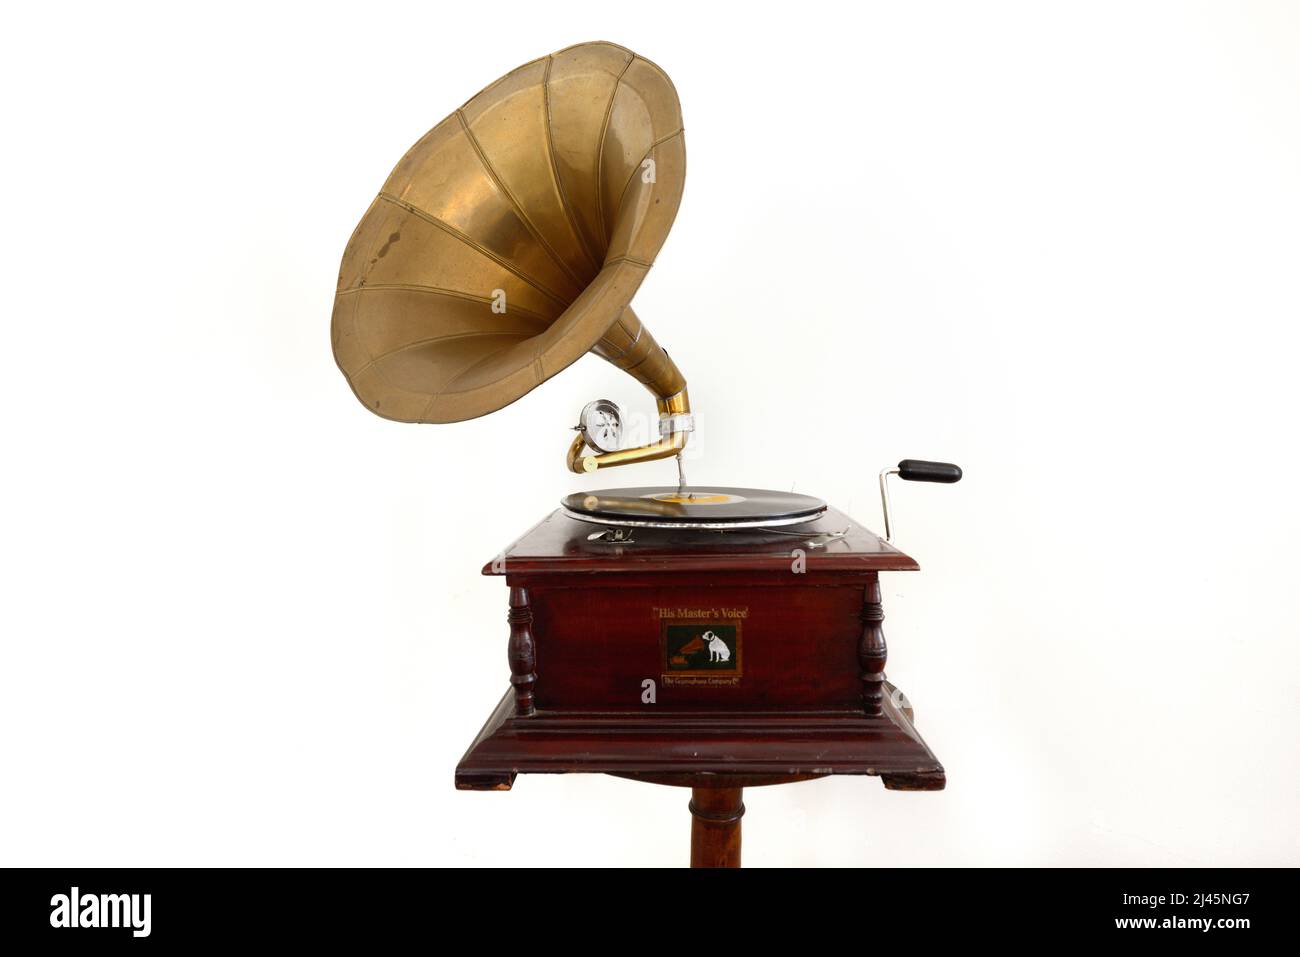 Old, Vintage, Antique ou Gramophone début c20th produit par The Gramophone Company Limited, alias sa voix de maître (HMV) sur fond blanc Banque D'Images